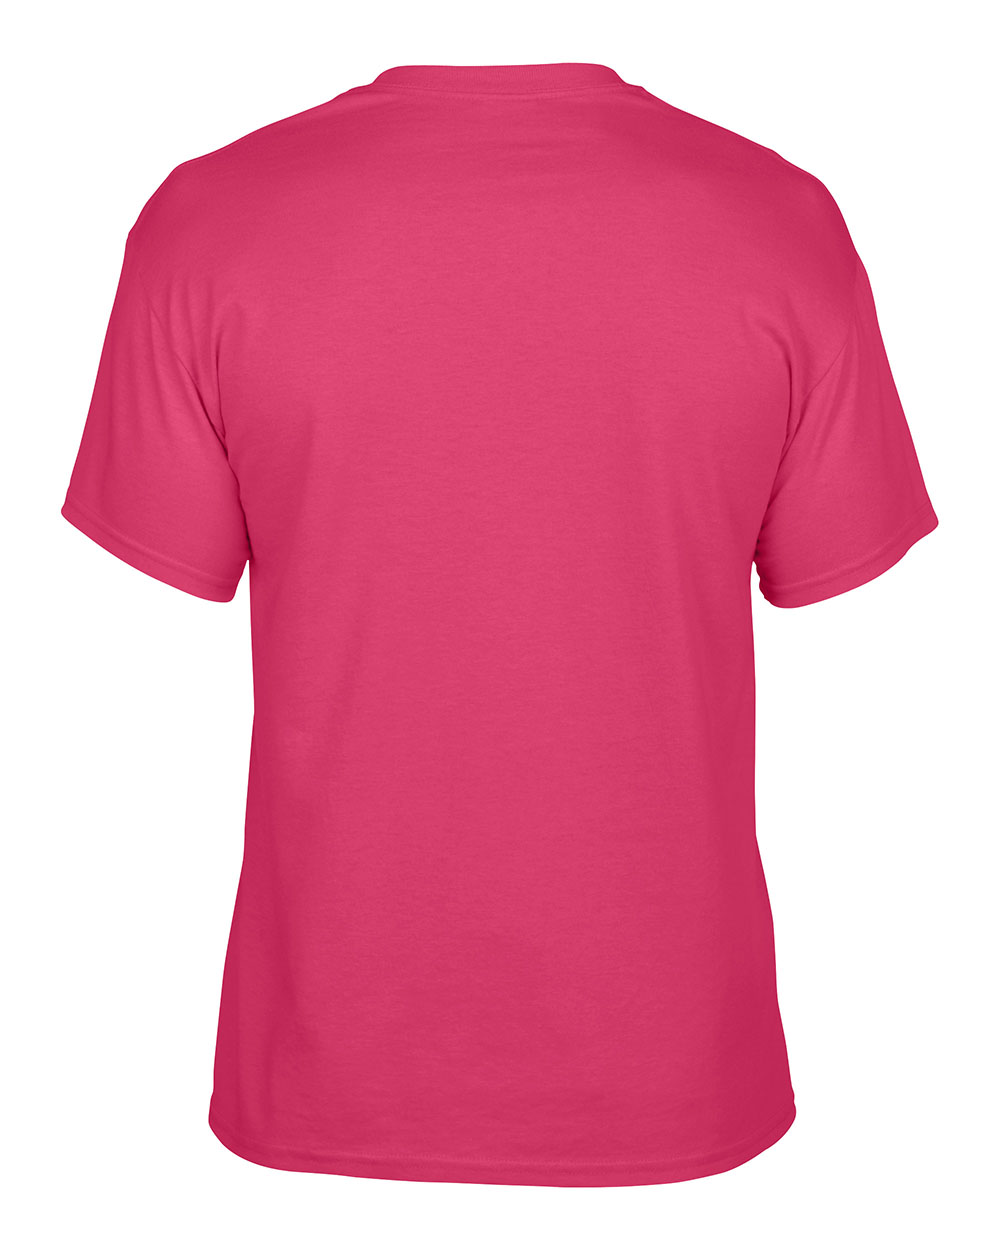 8000 | Short Sleeve | T-Shirts | Categories | Gildan USA Site